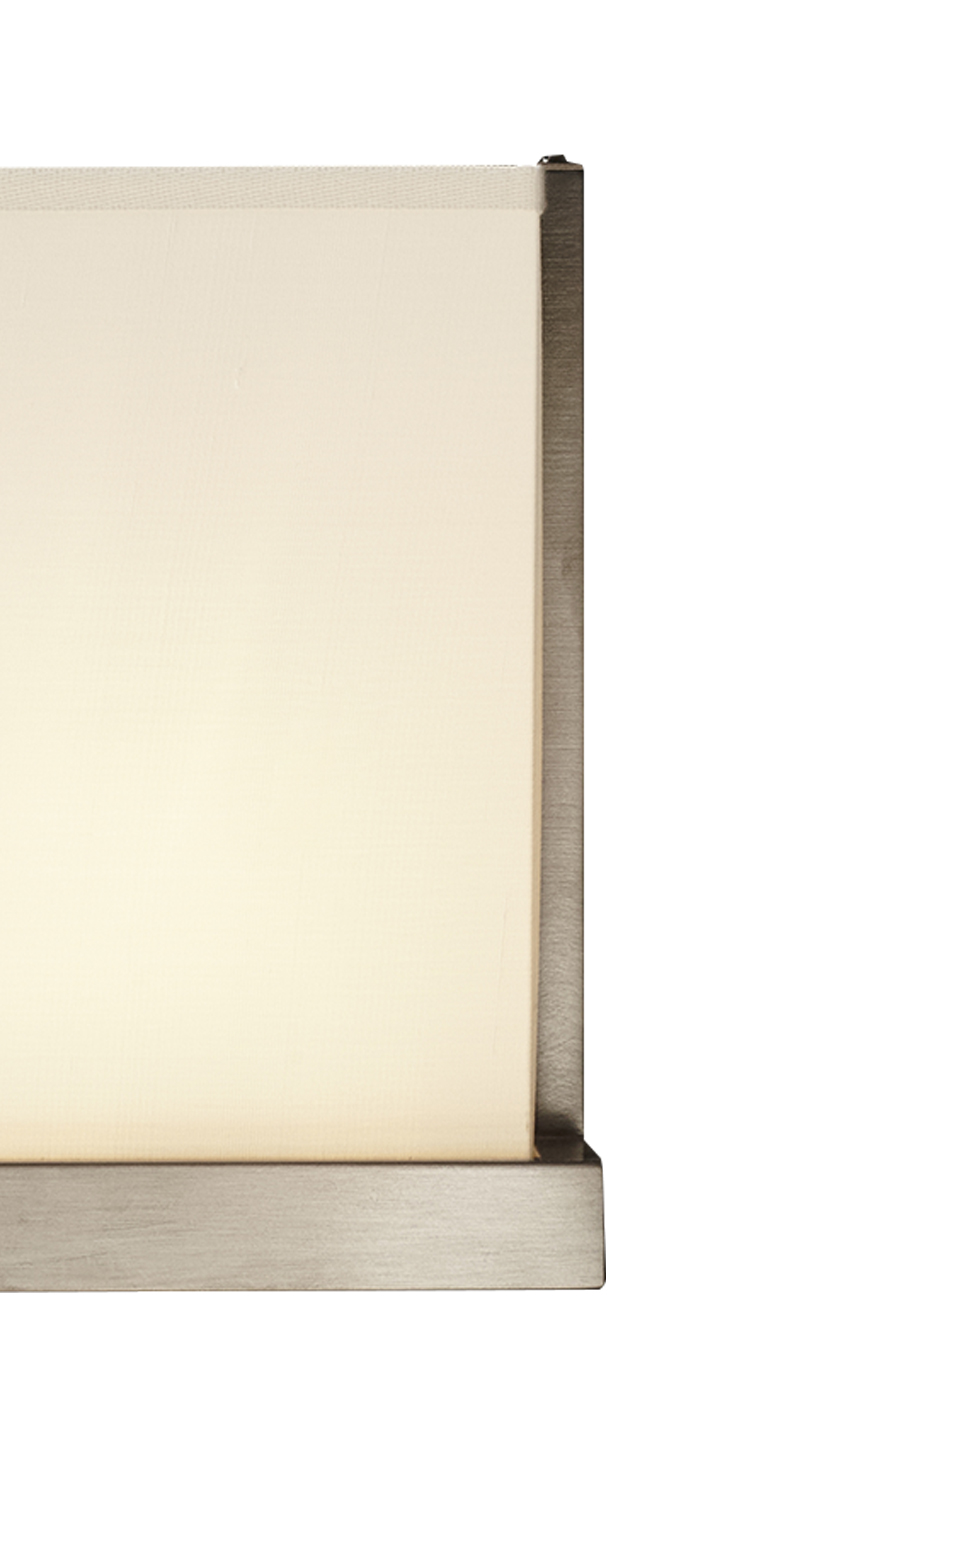 Dettaglio di Colette, lampada da parete a LED in bronzo, nichel o cromo con paralume in lino, cotone o con bordo fatto a mano, del catalogo di Promemoria | Promemoria